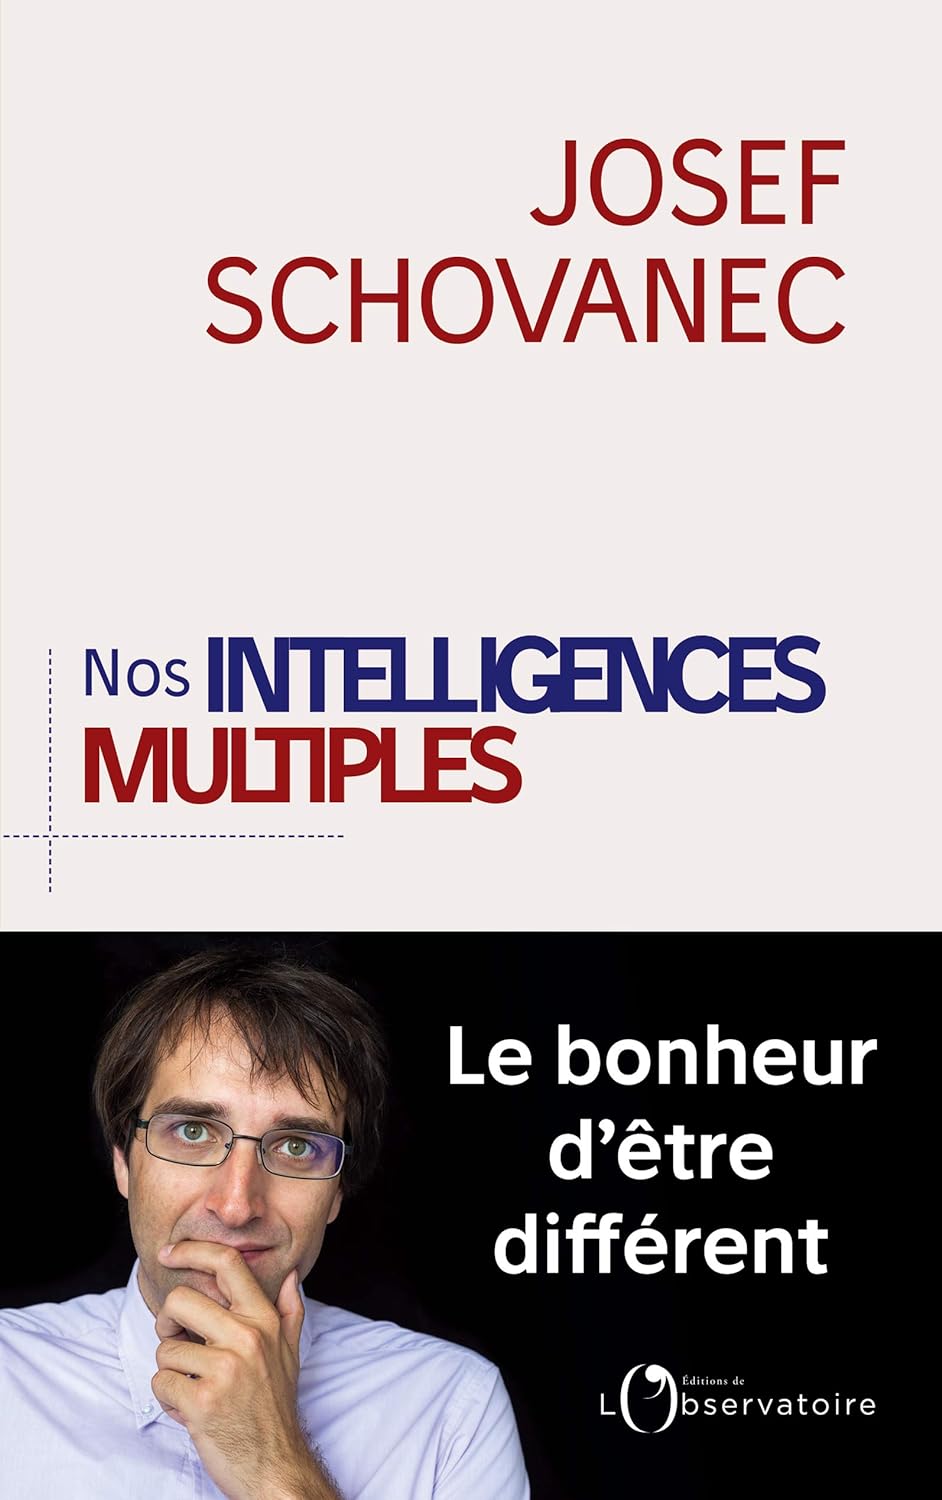 [France] “Nos intelligences multiples” (Josef Schovanec, 2018)